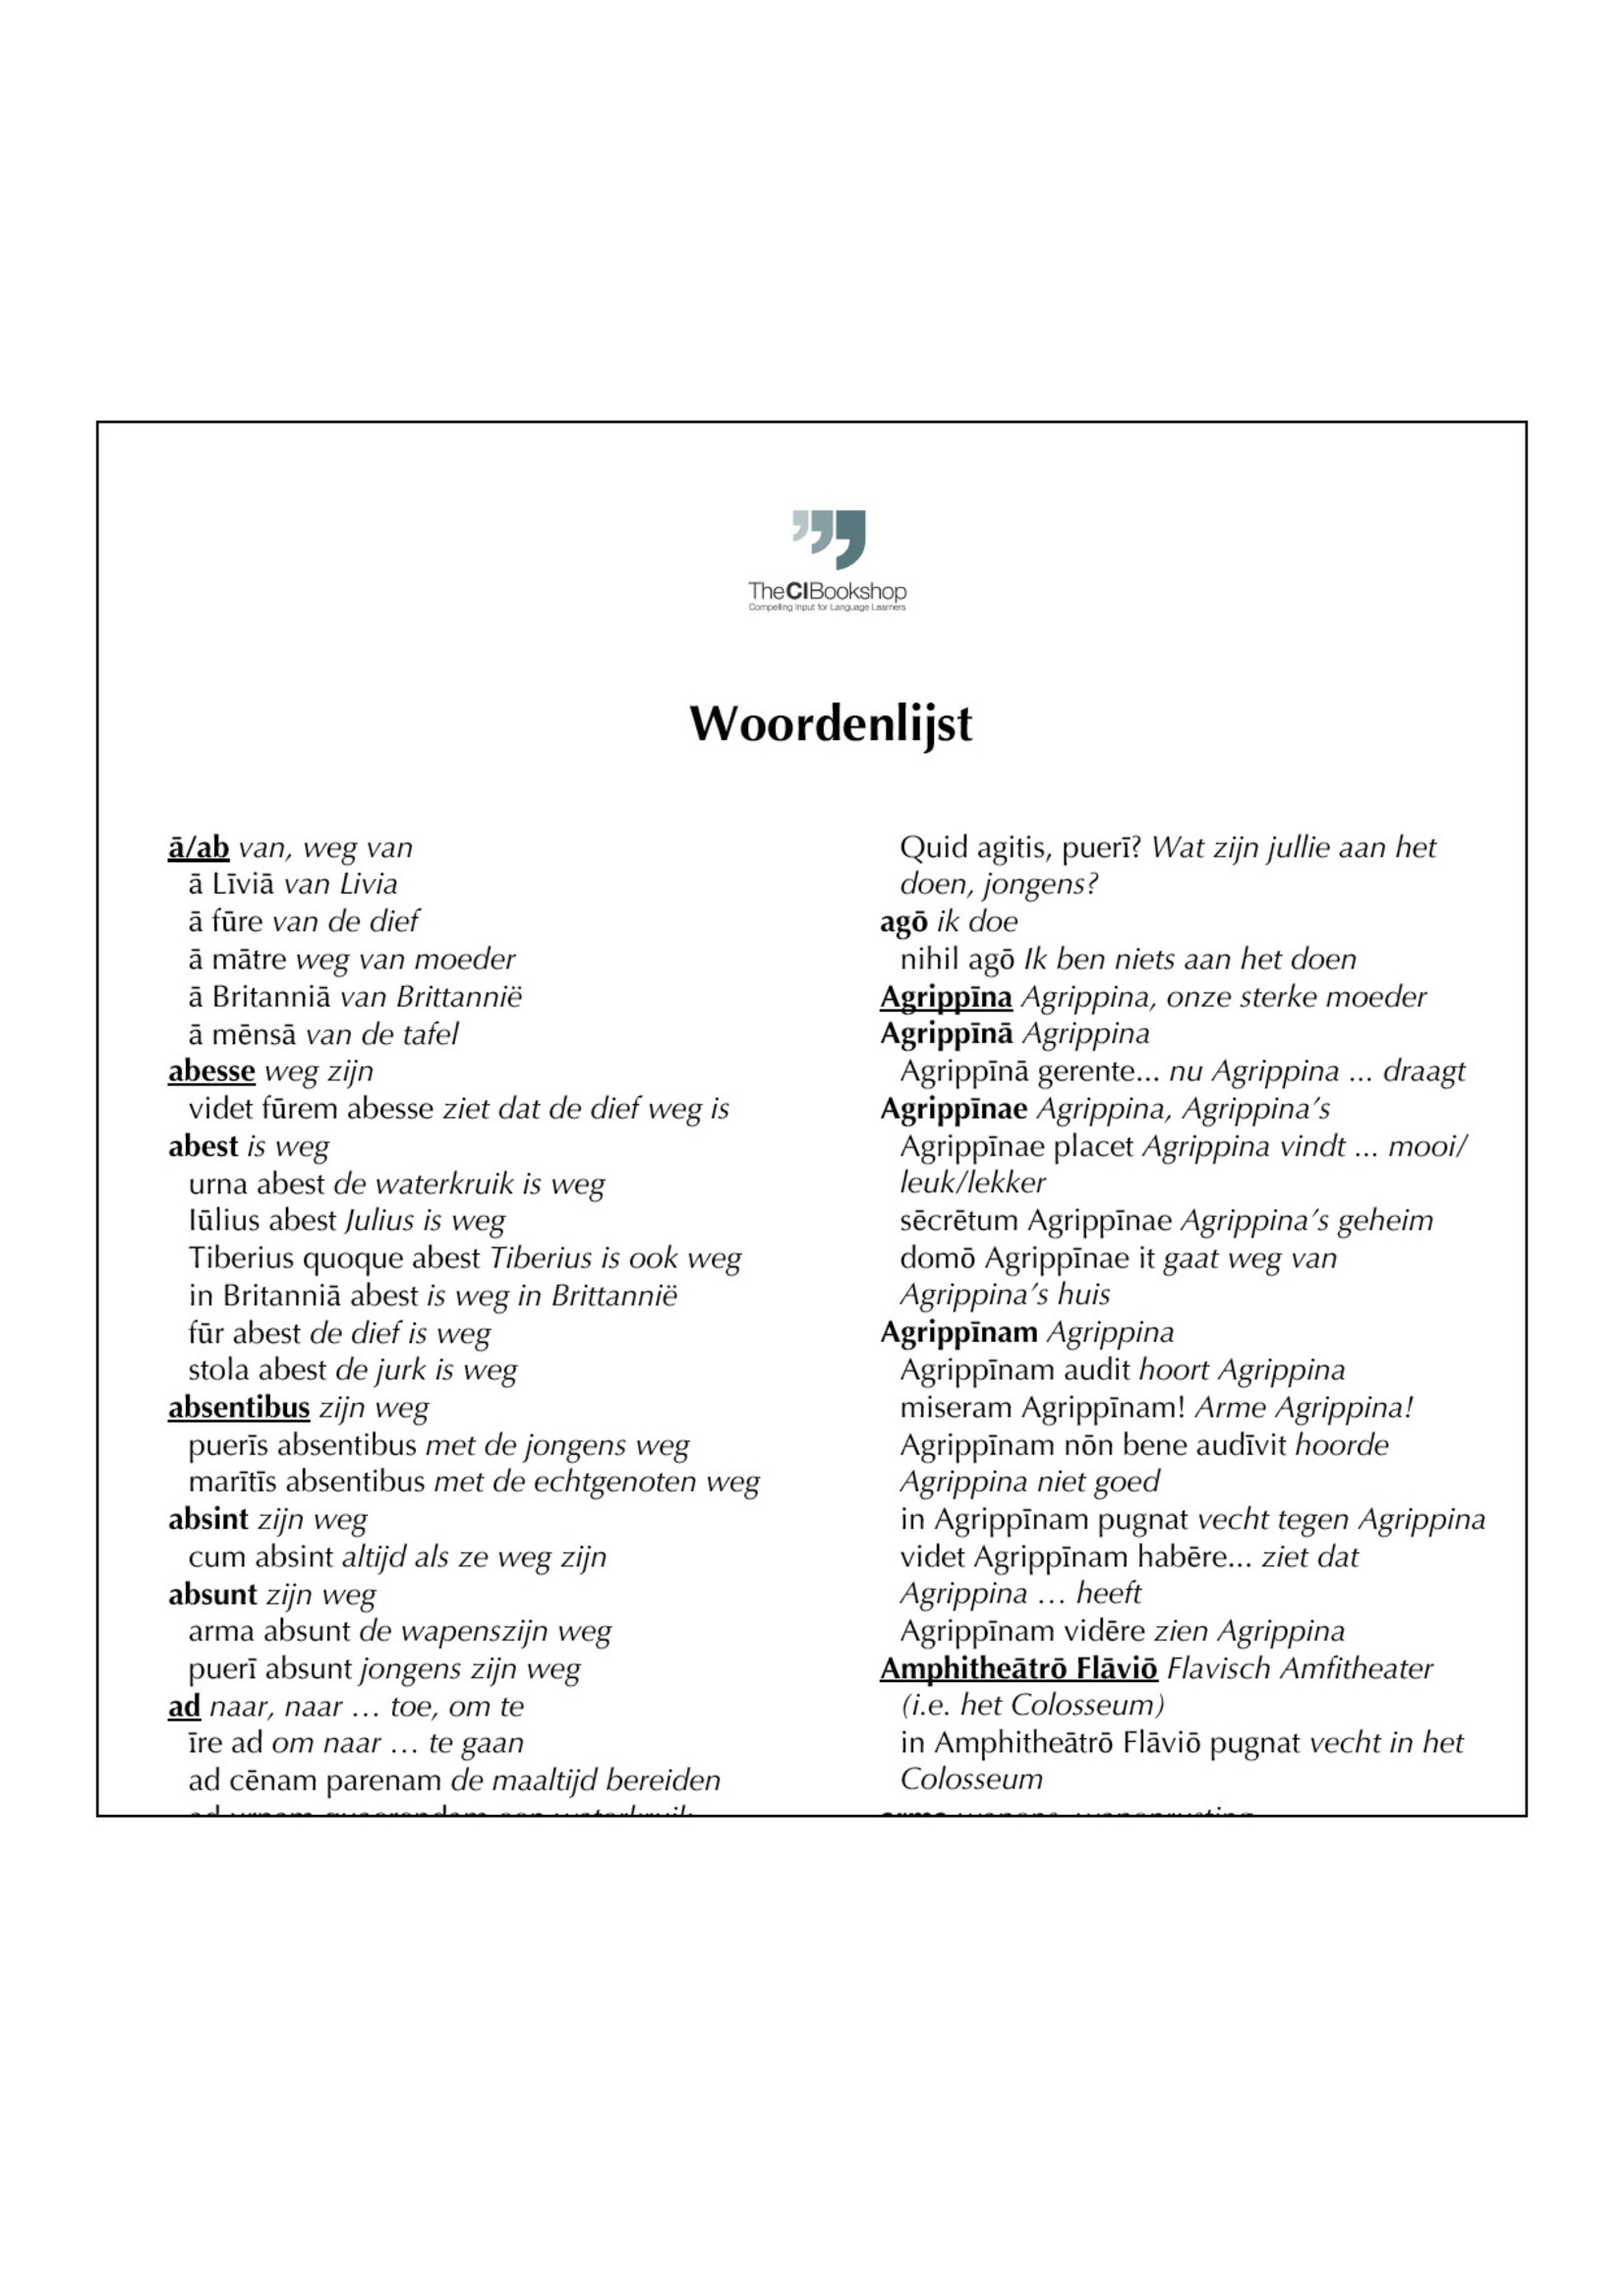 Dutch glossary for Pīsō Ille Poētulus